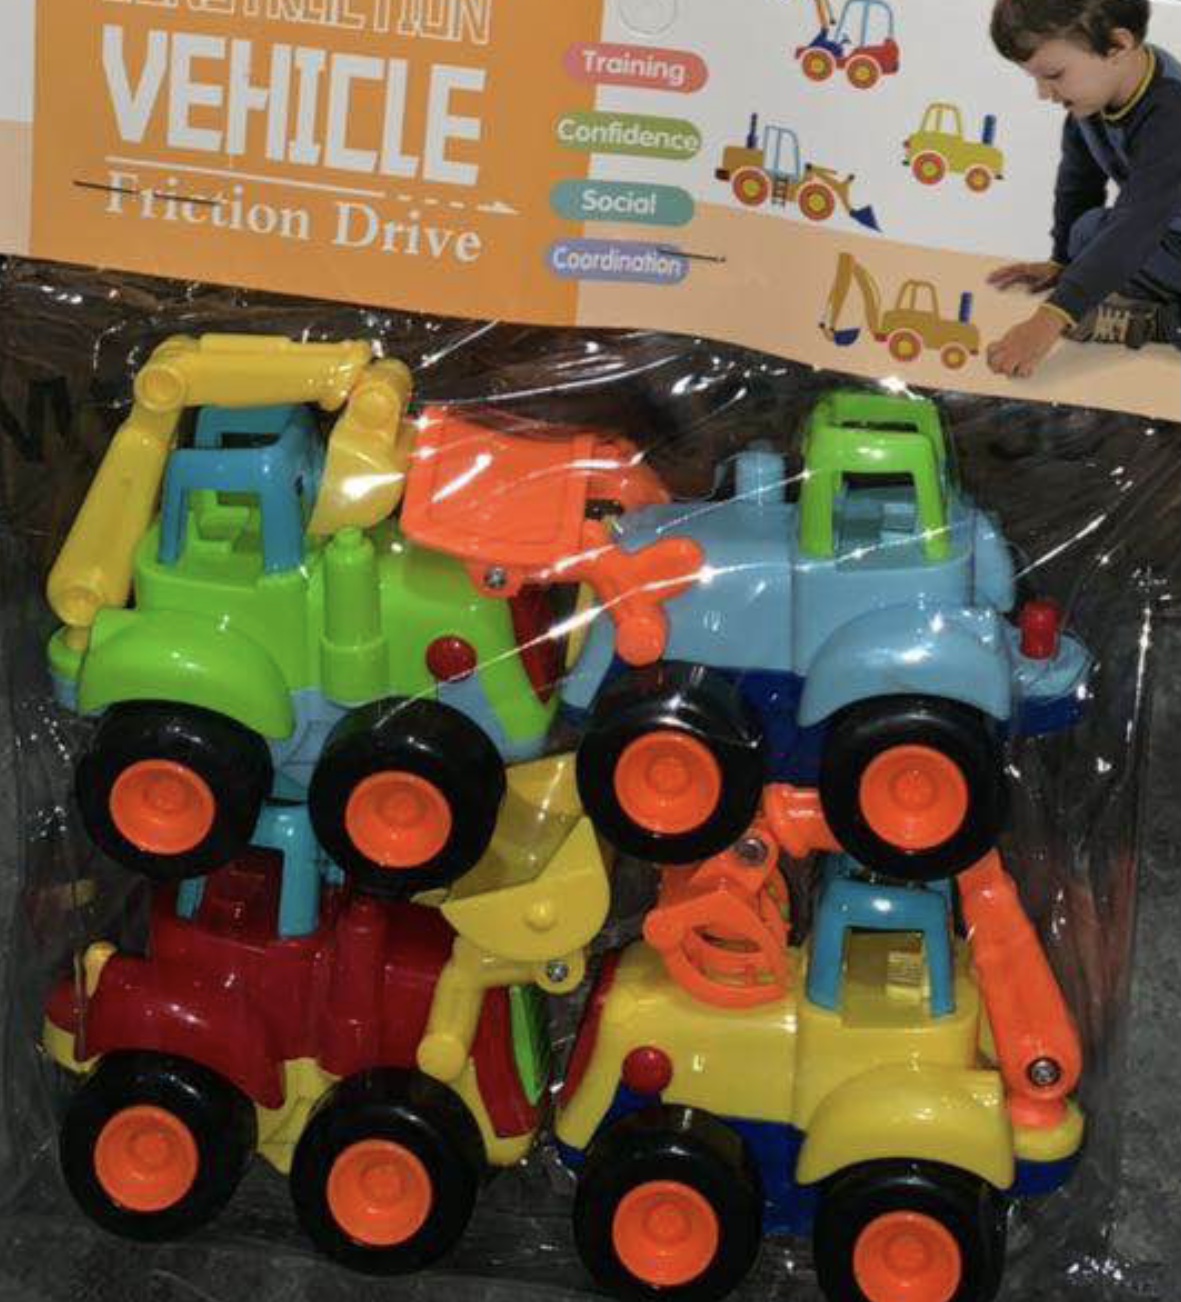 Set de patru vehicule de construcție din plastic pentru copii de vârstă trei ani + un joc pentru pitici care vor sa se distreze într-un mod plăcut 